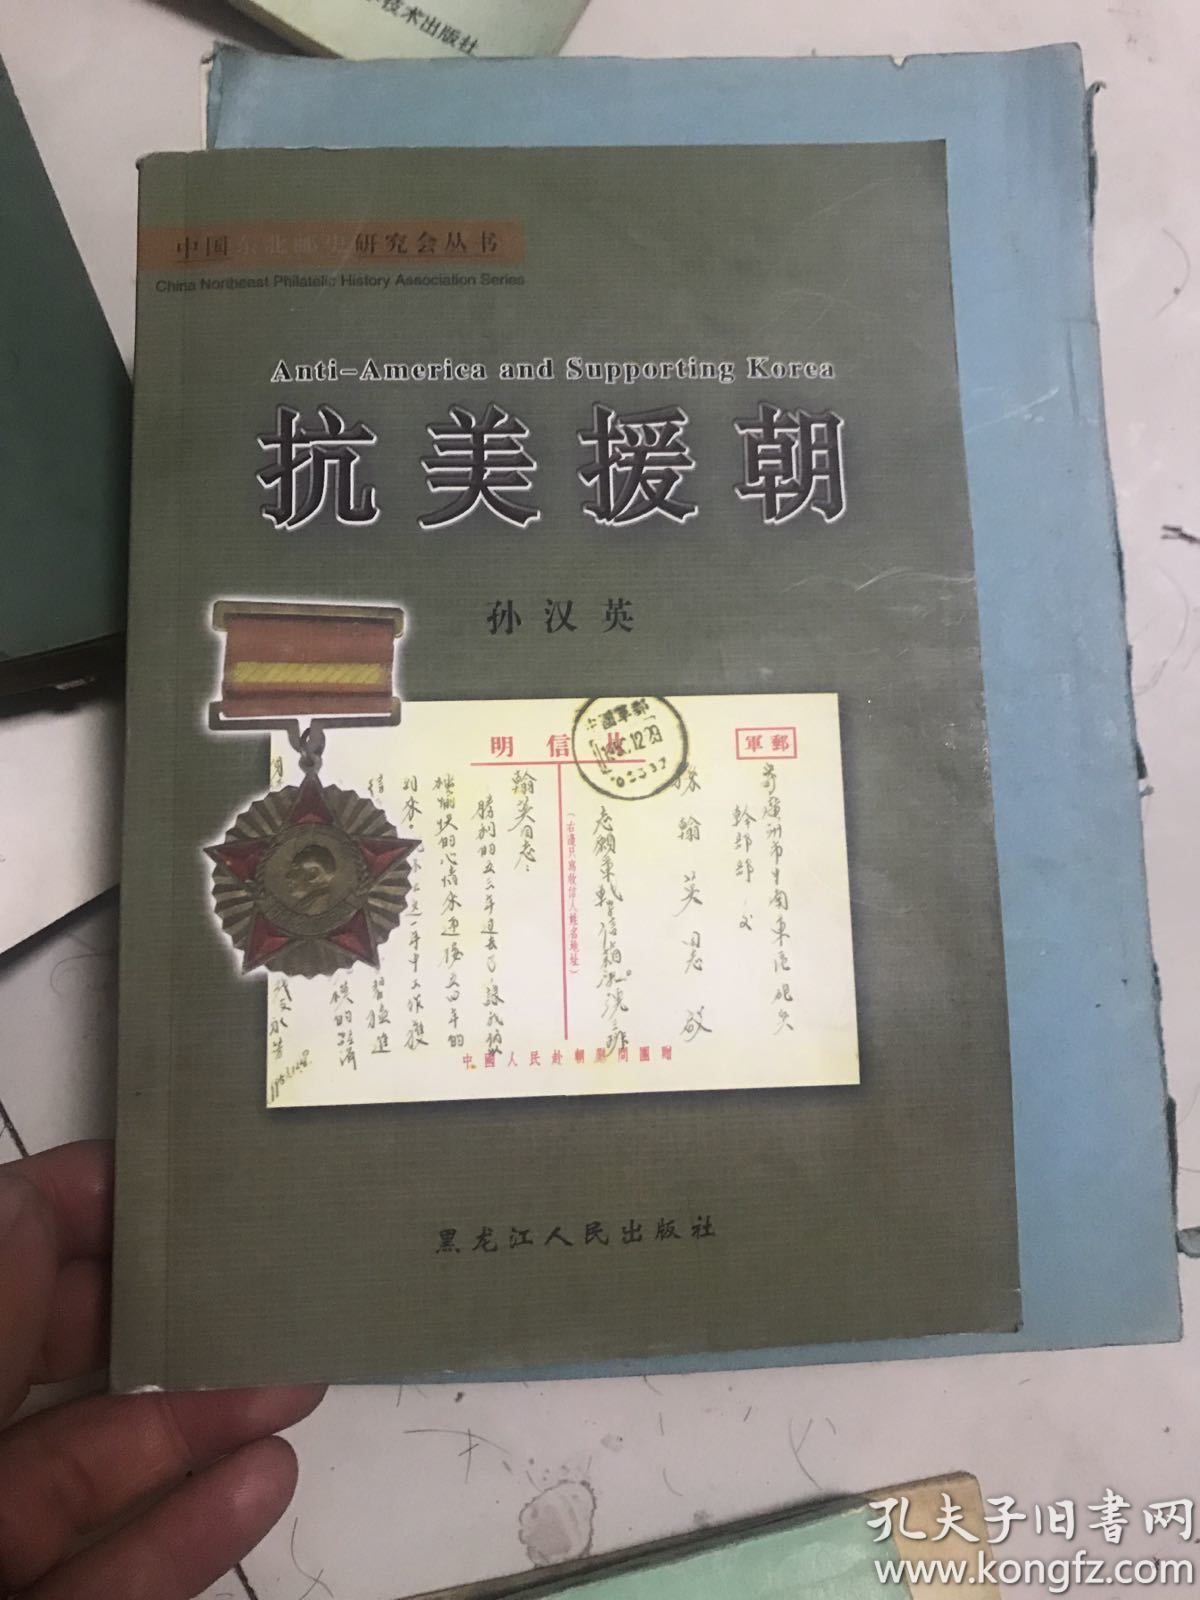 中国东北邮史研究会丛书-抗美援朝